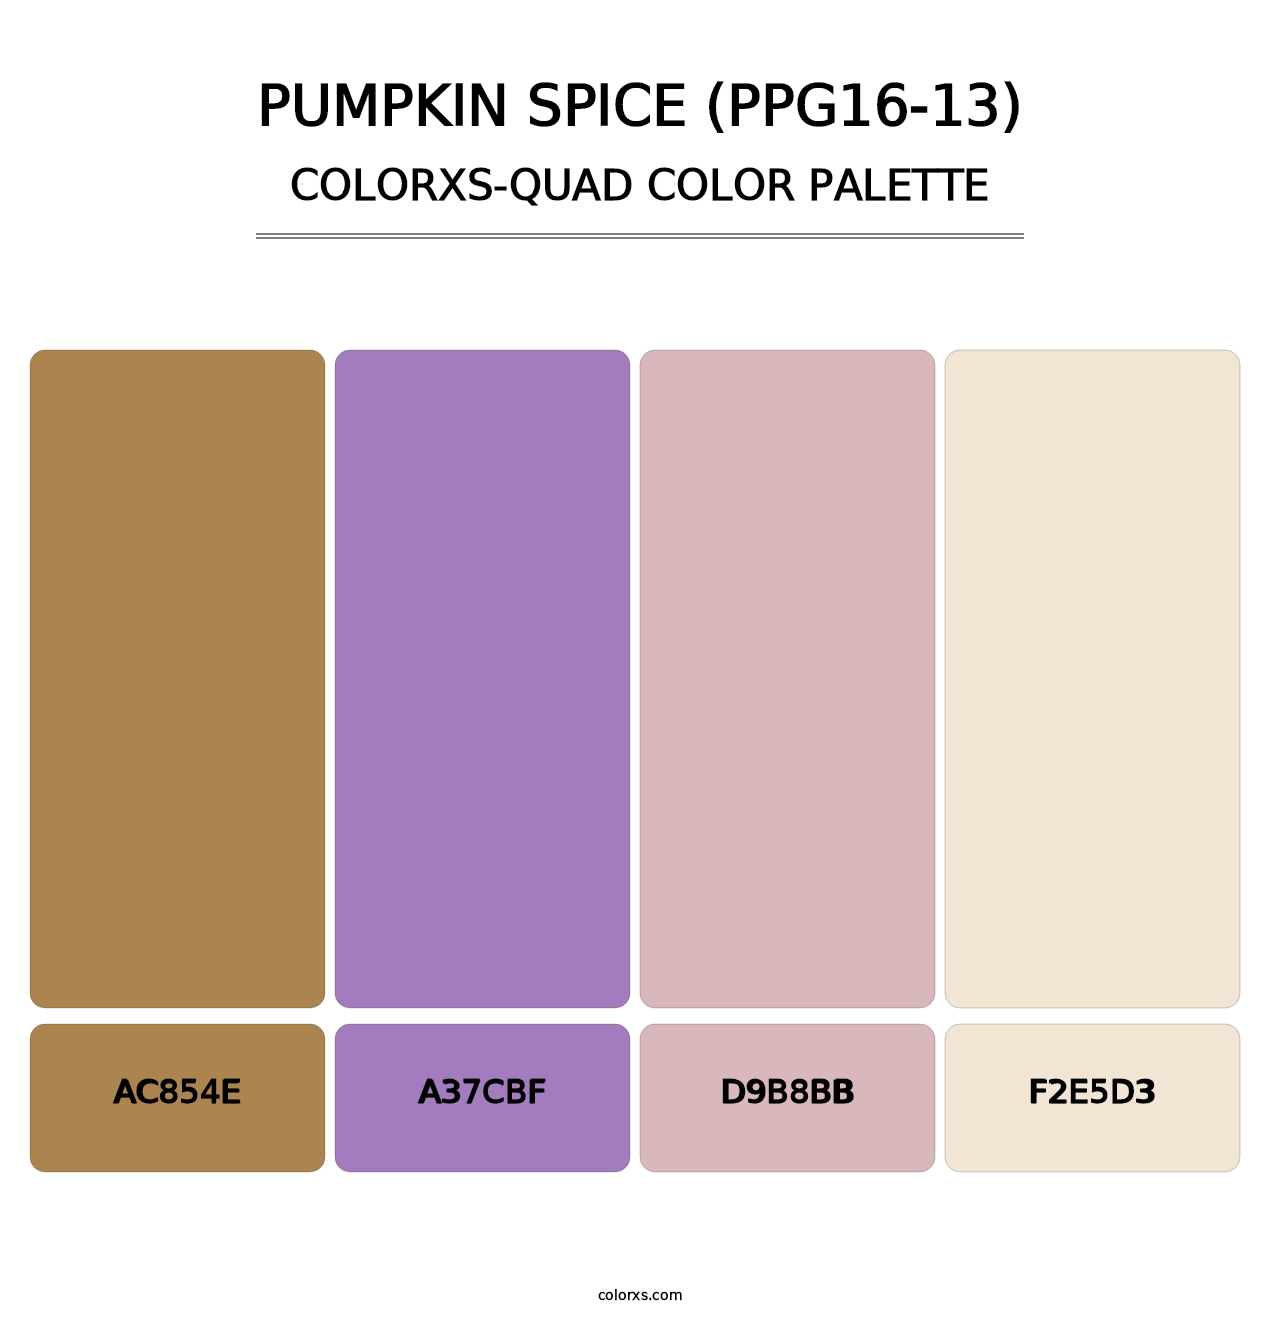 Pumpkin Spice (PPG16-13) - Colorxs Quad Palette